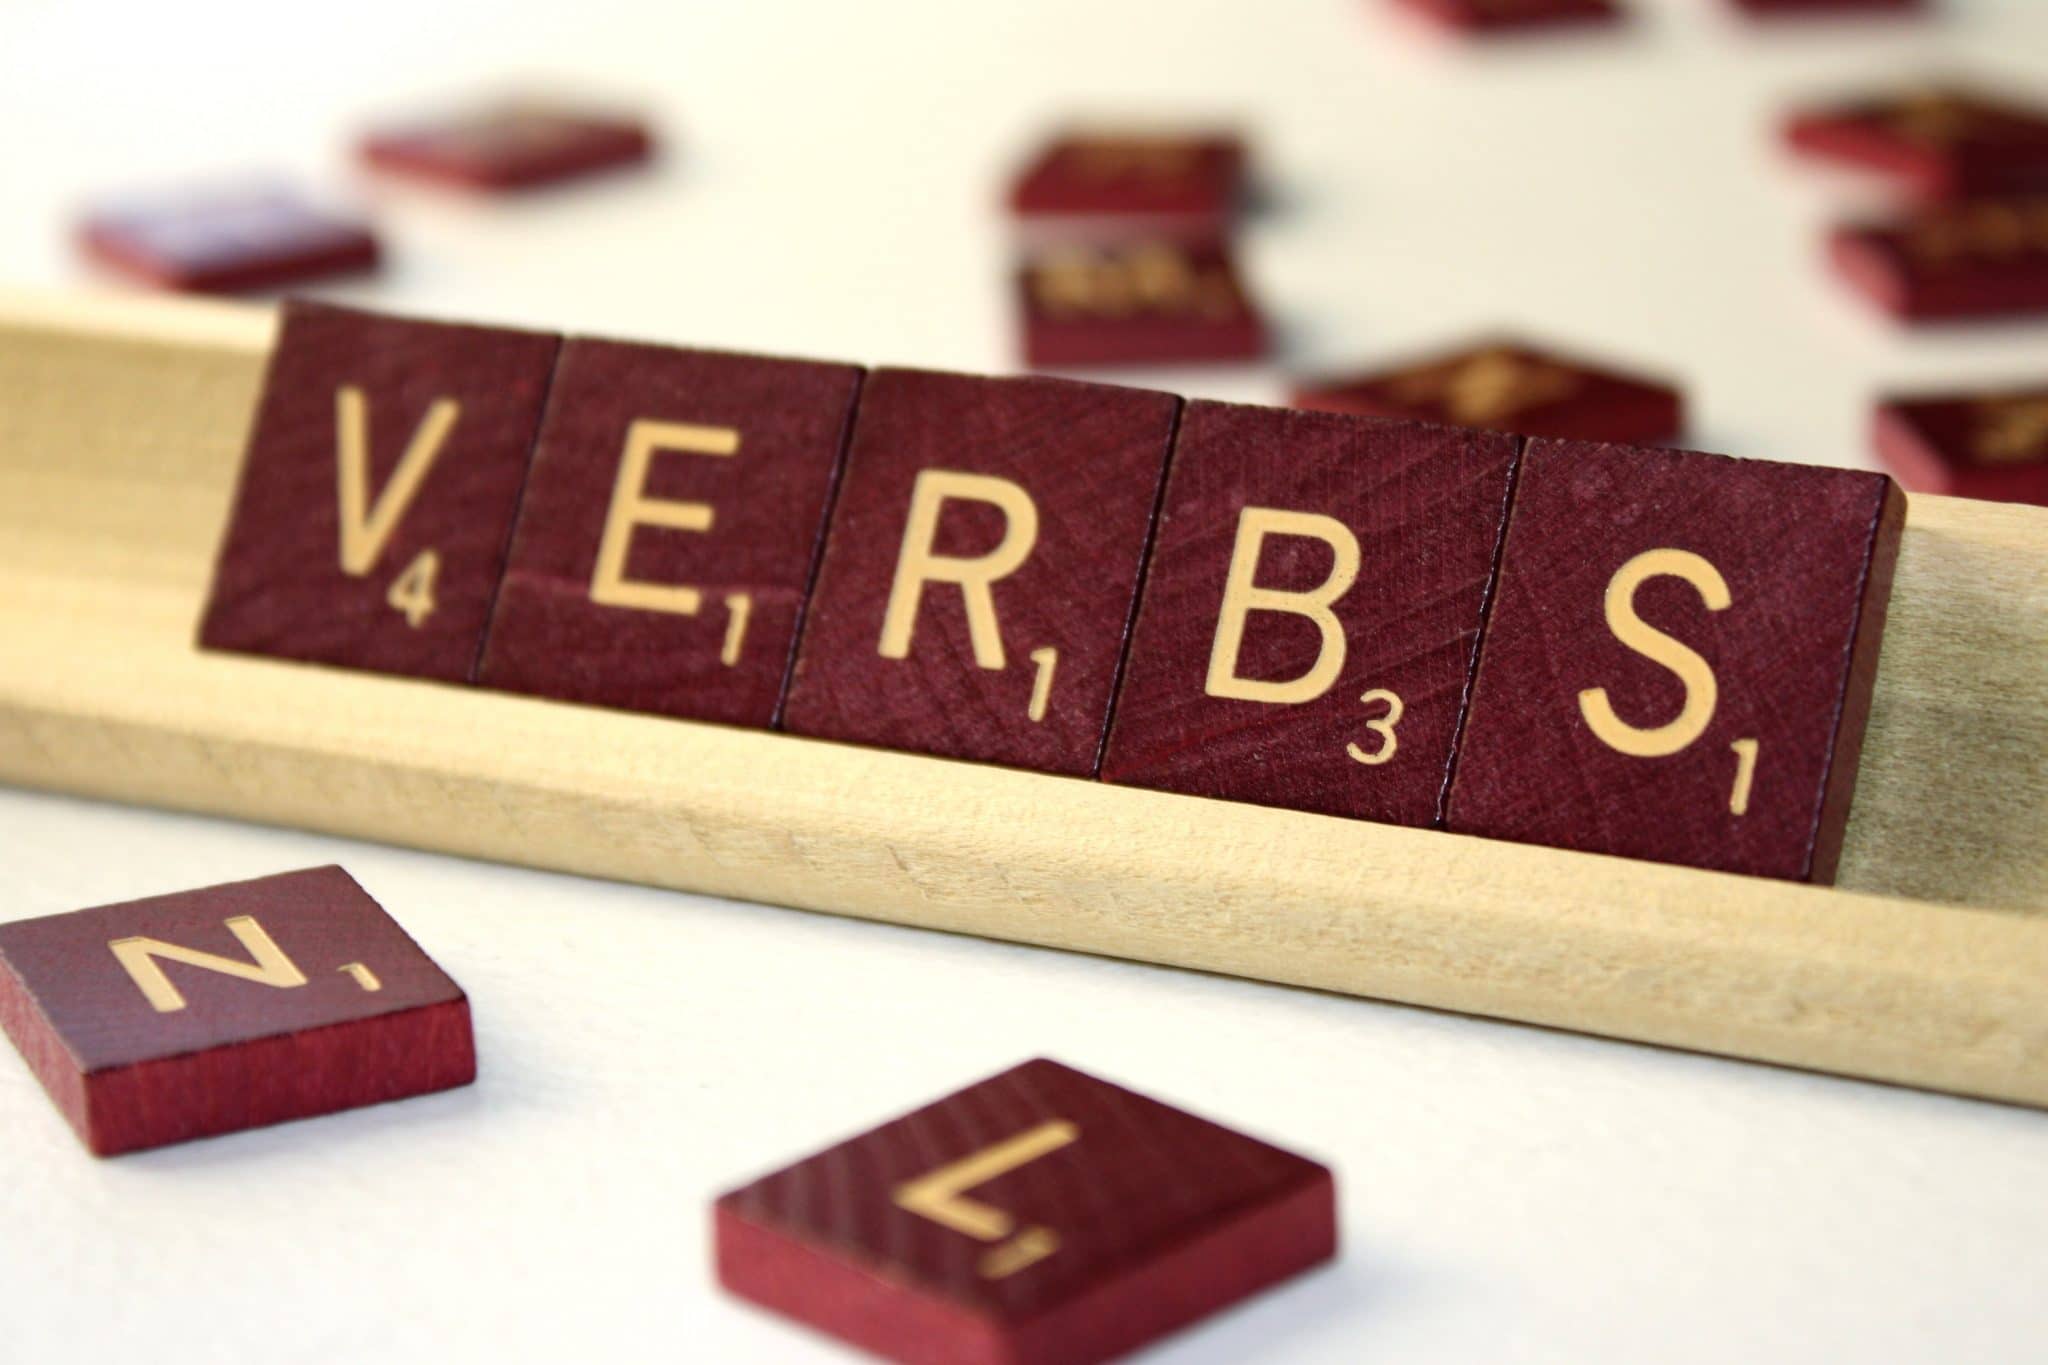 Os 20 verbos mais usados em inglês